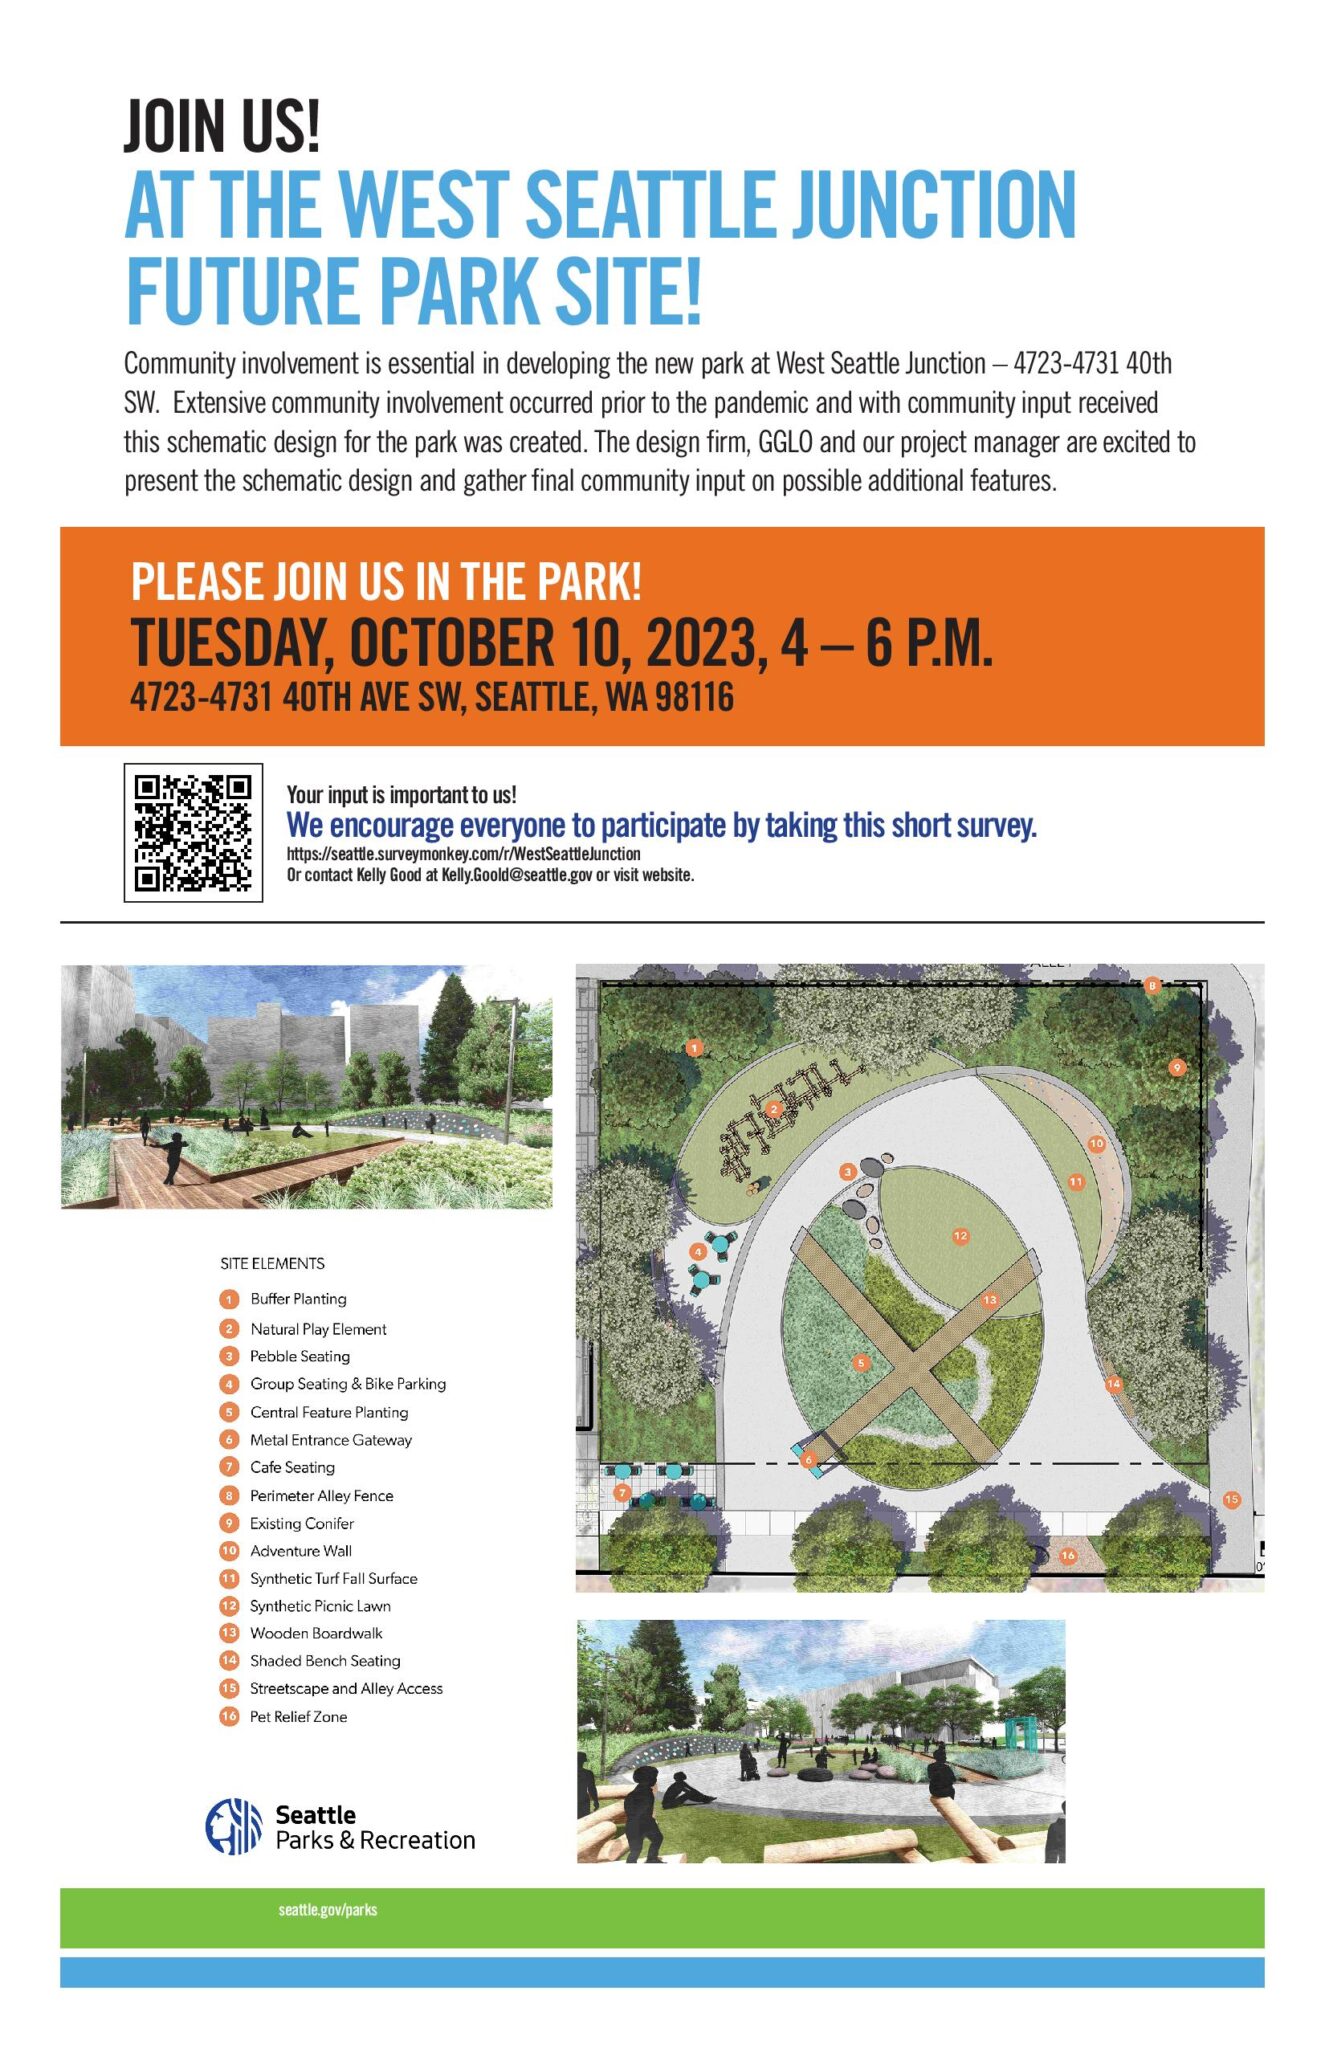 社区邀请您审查未来西西雅图交汇处公园的设计